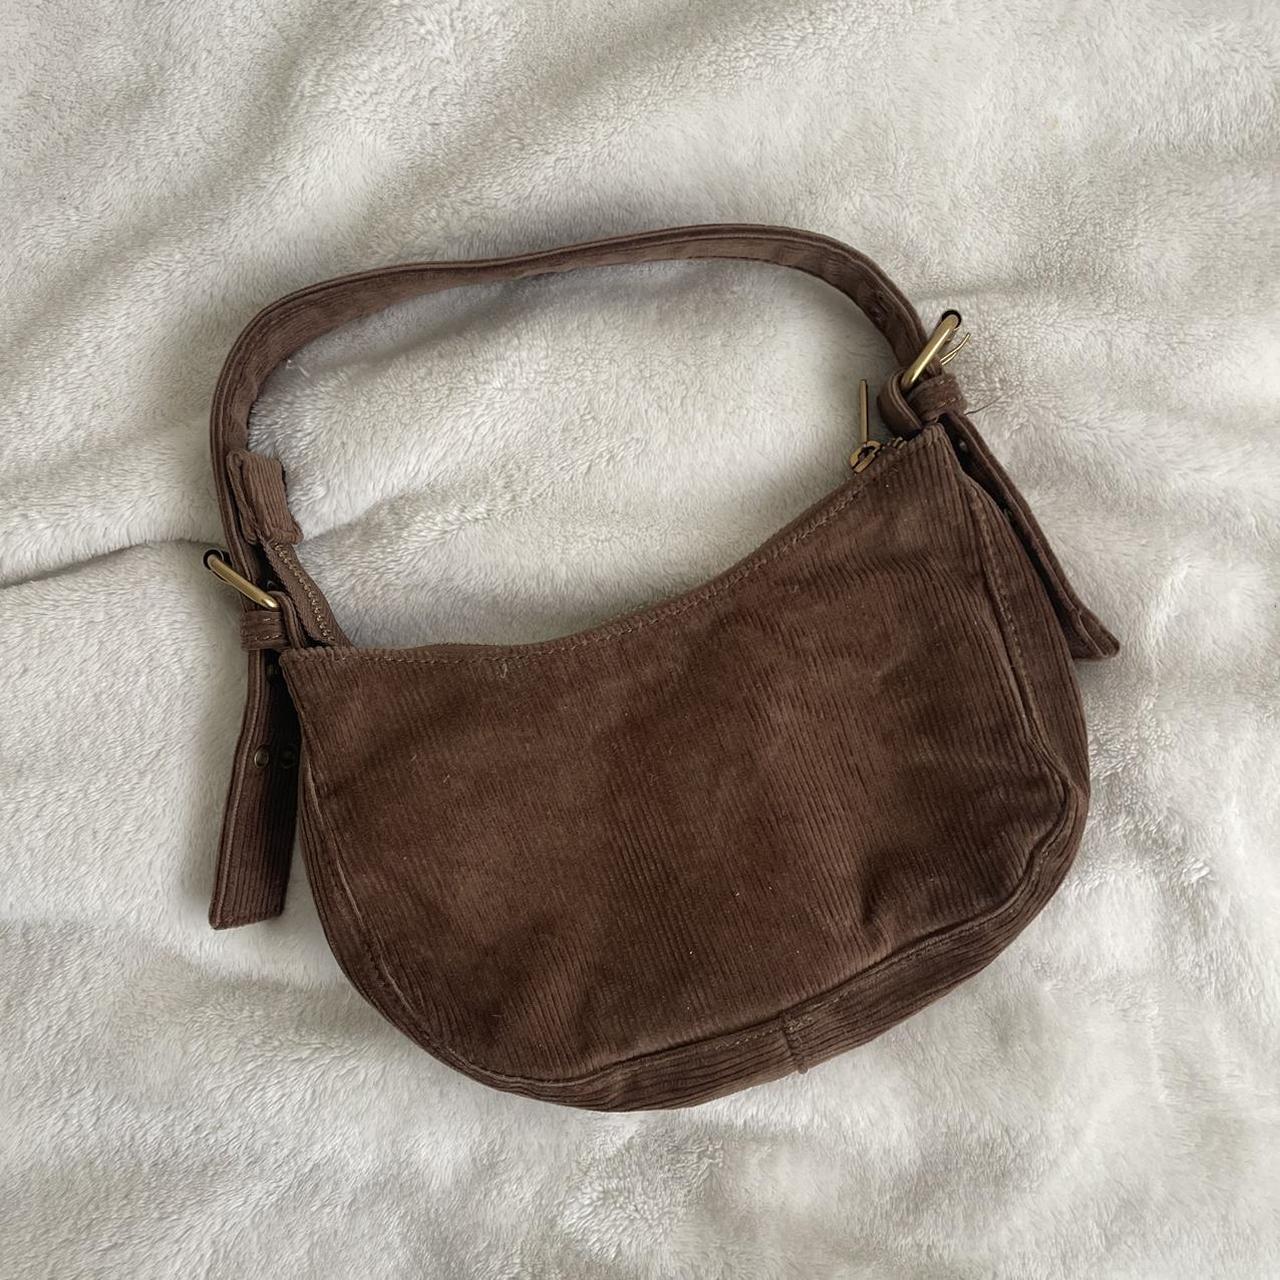 Accessories - Brandy Melville DE  Purses, Brown shoulder bag, Bags